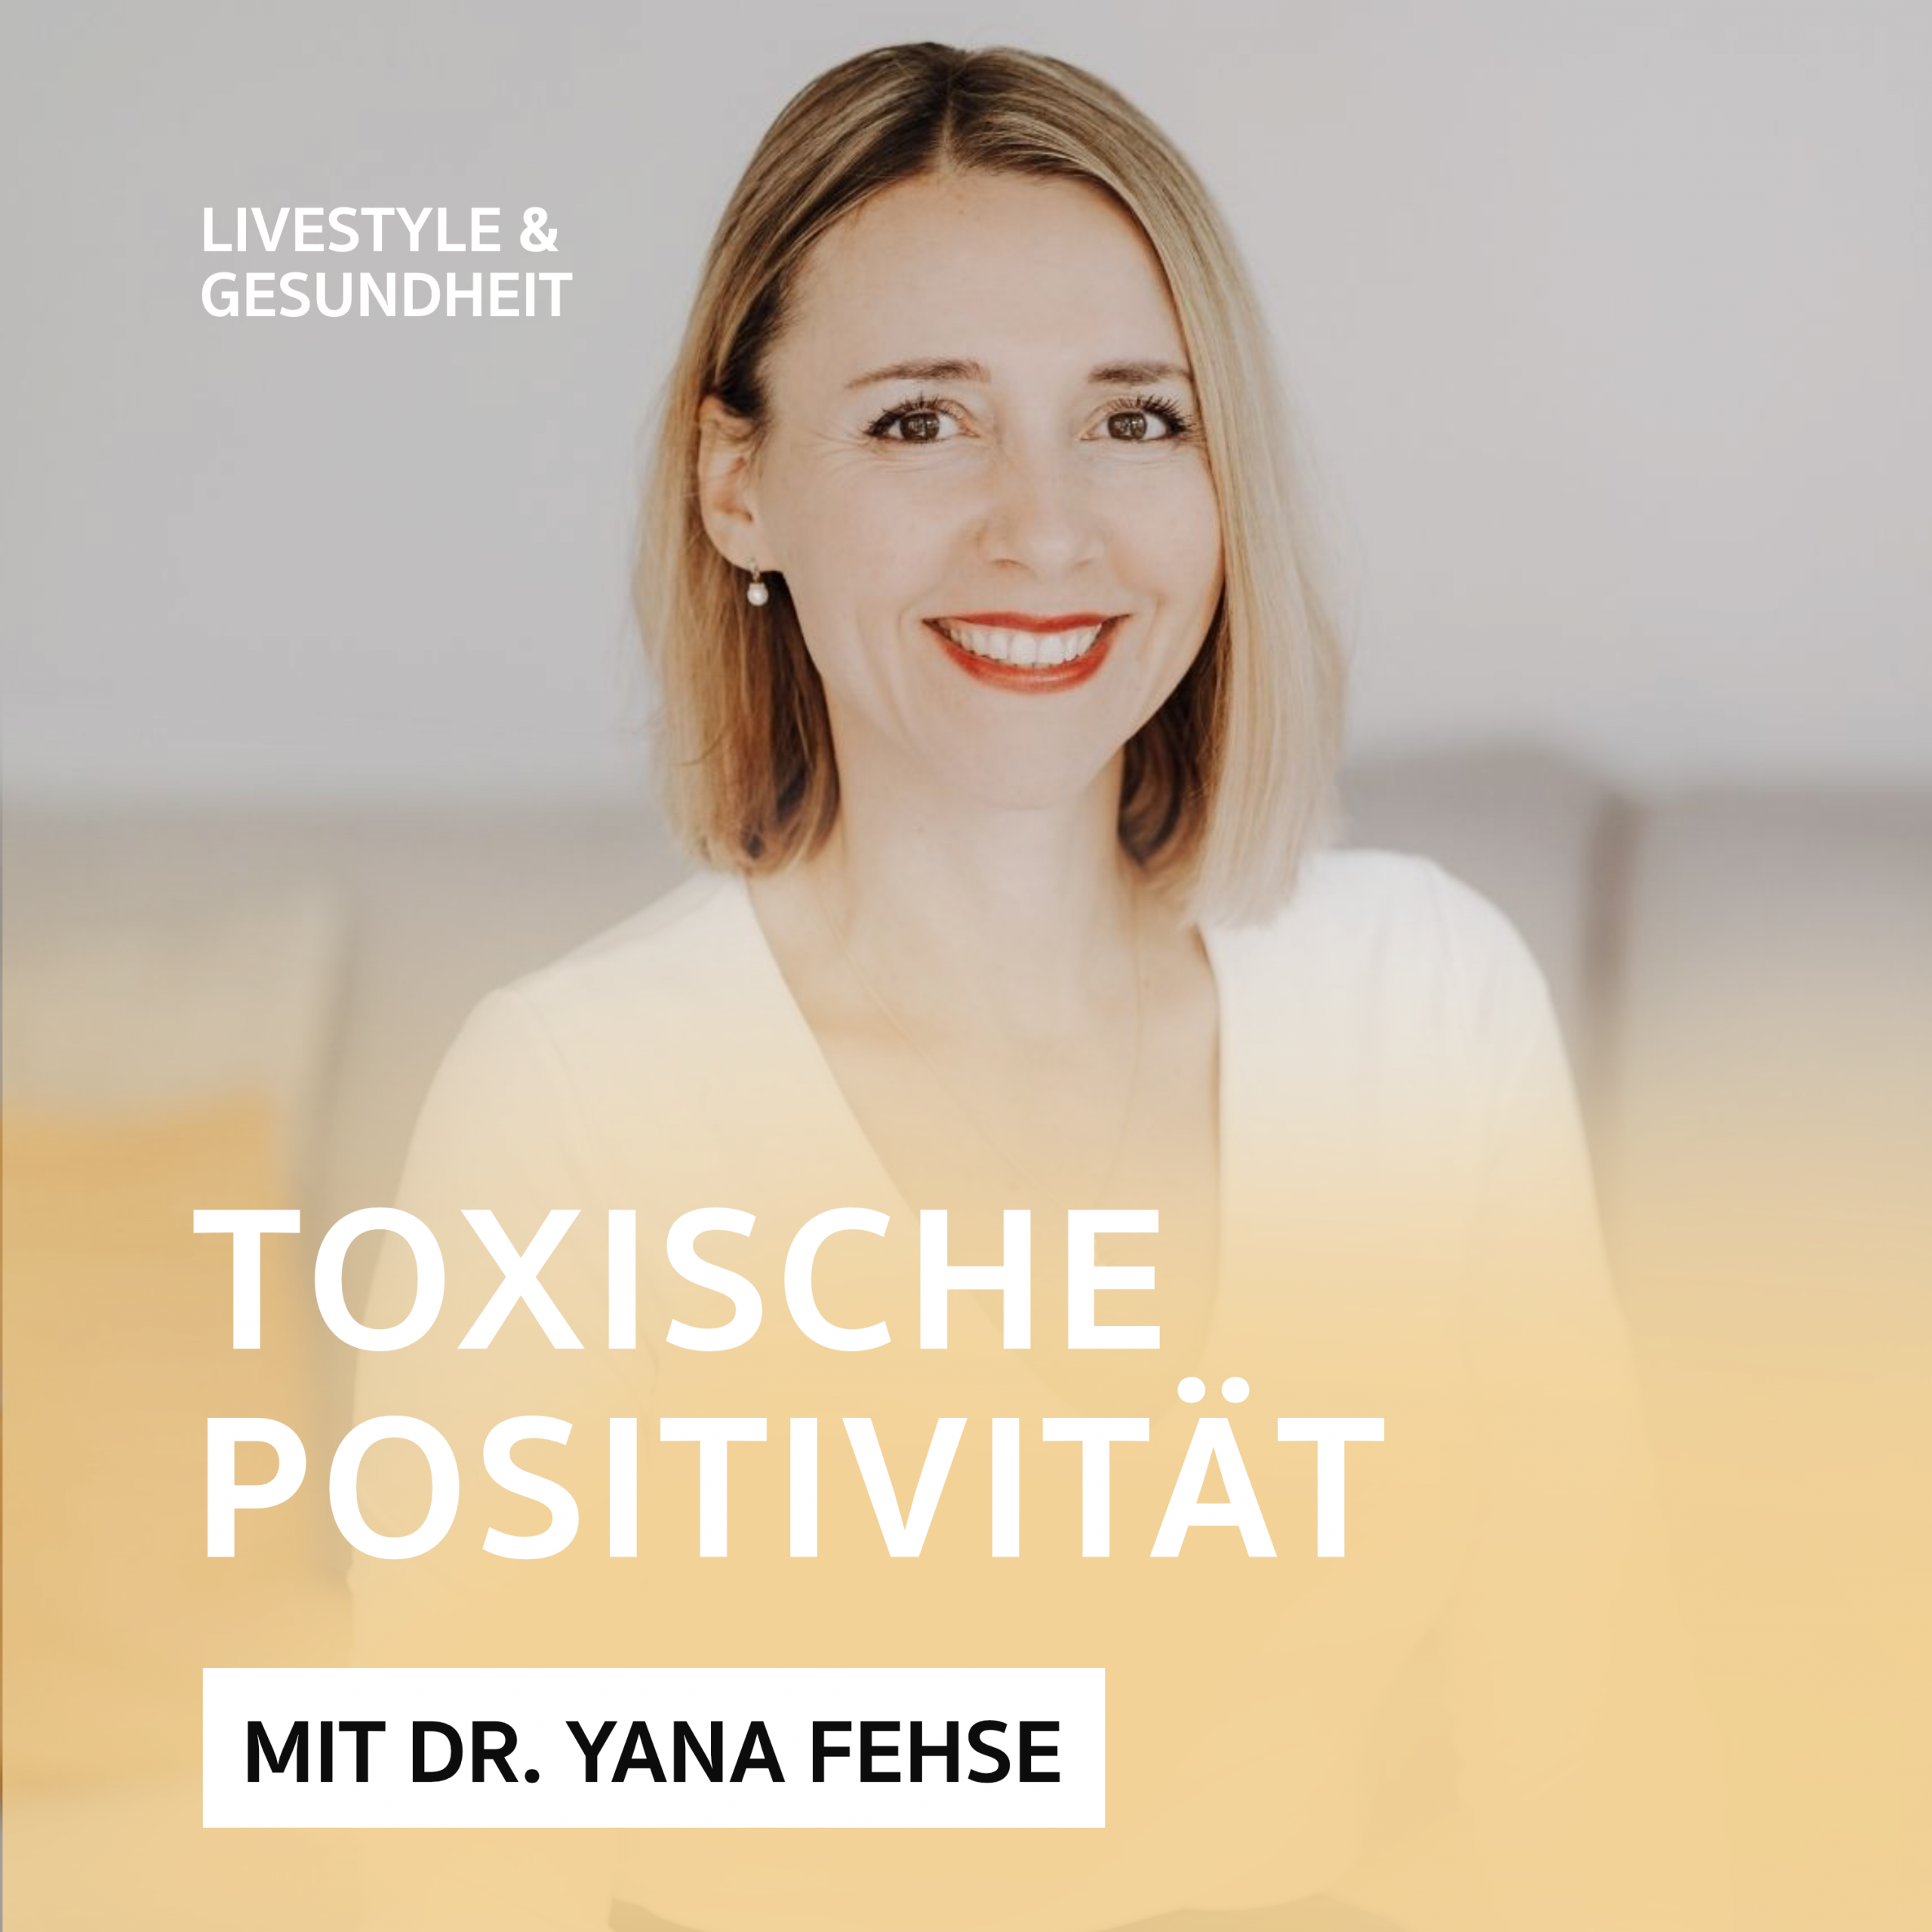 Toxische Positivität – Podcast mit Dr. Yana Fehse